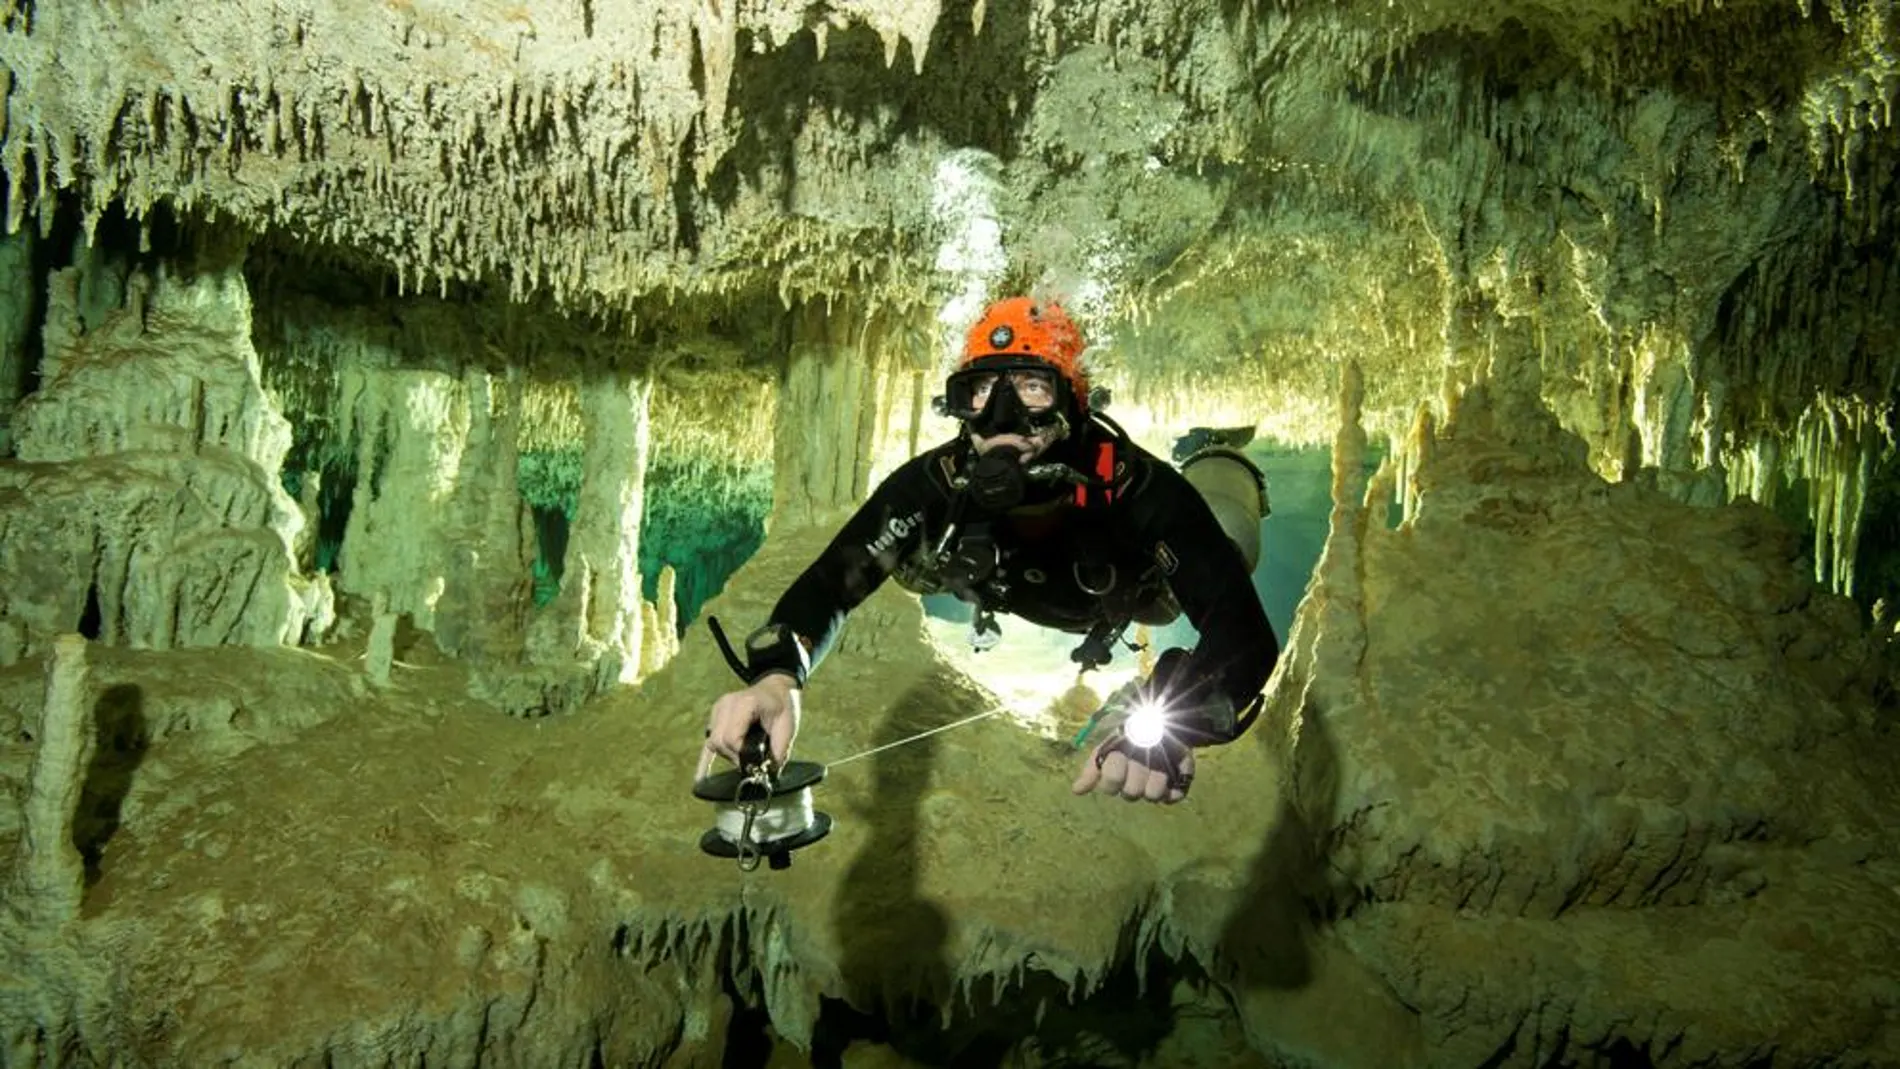 Sac Actun, en México, es el sistema de cuevas más grande del mundo